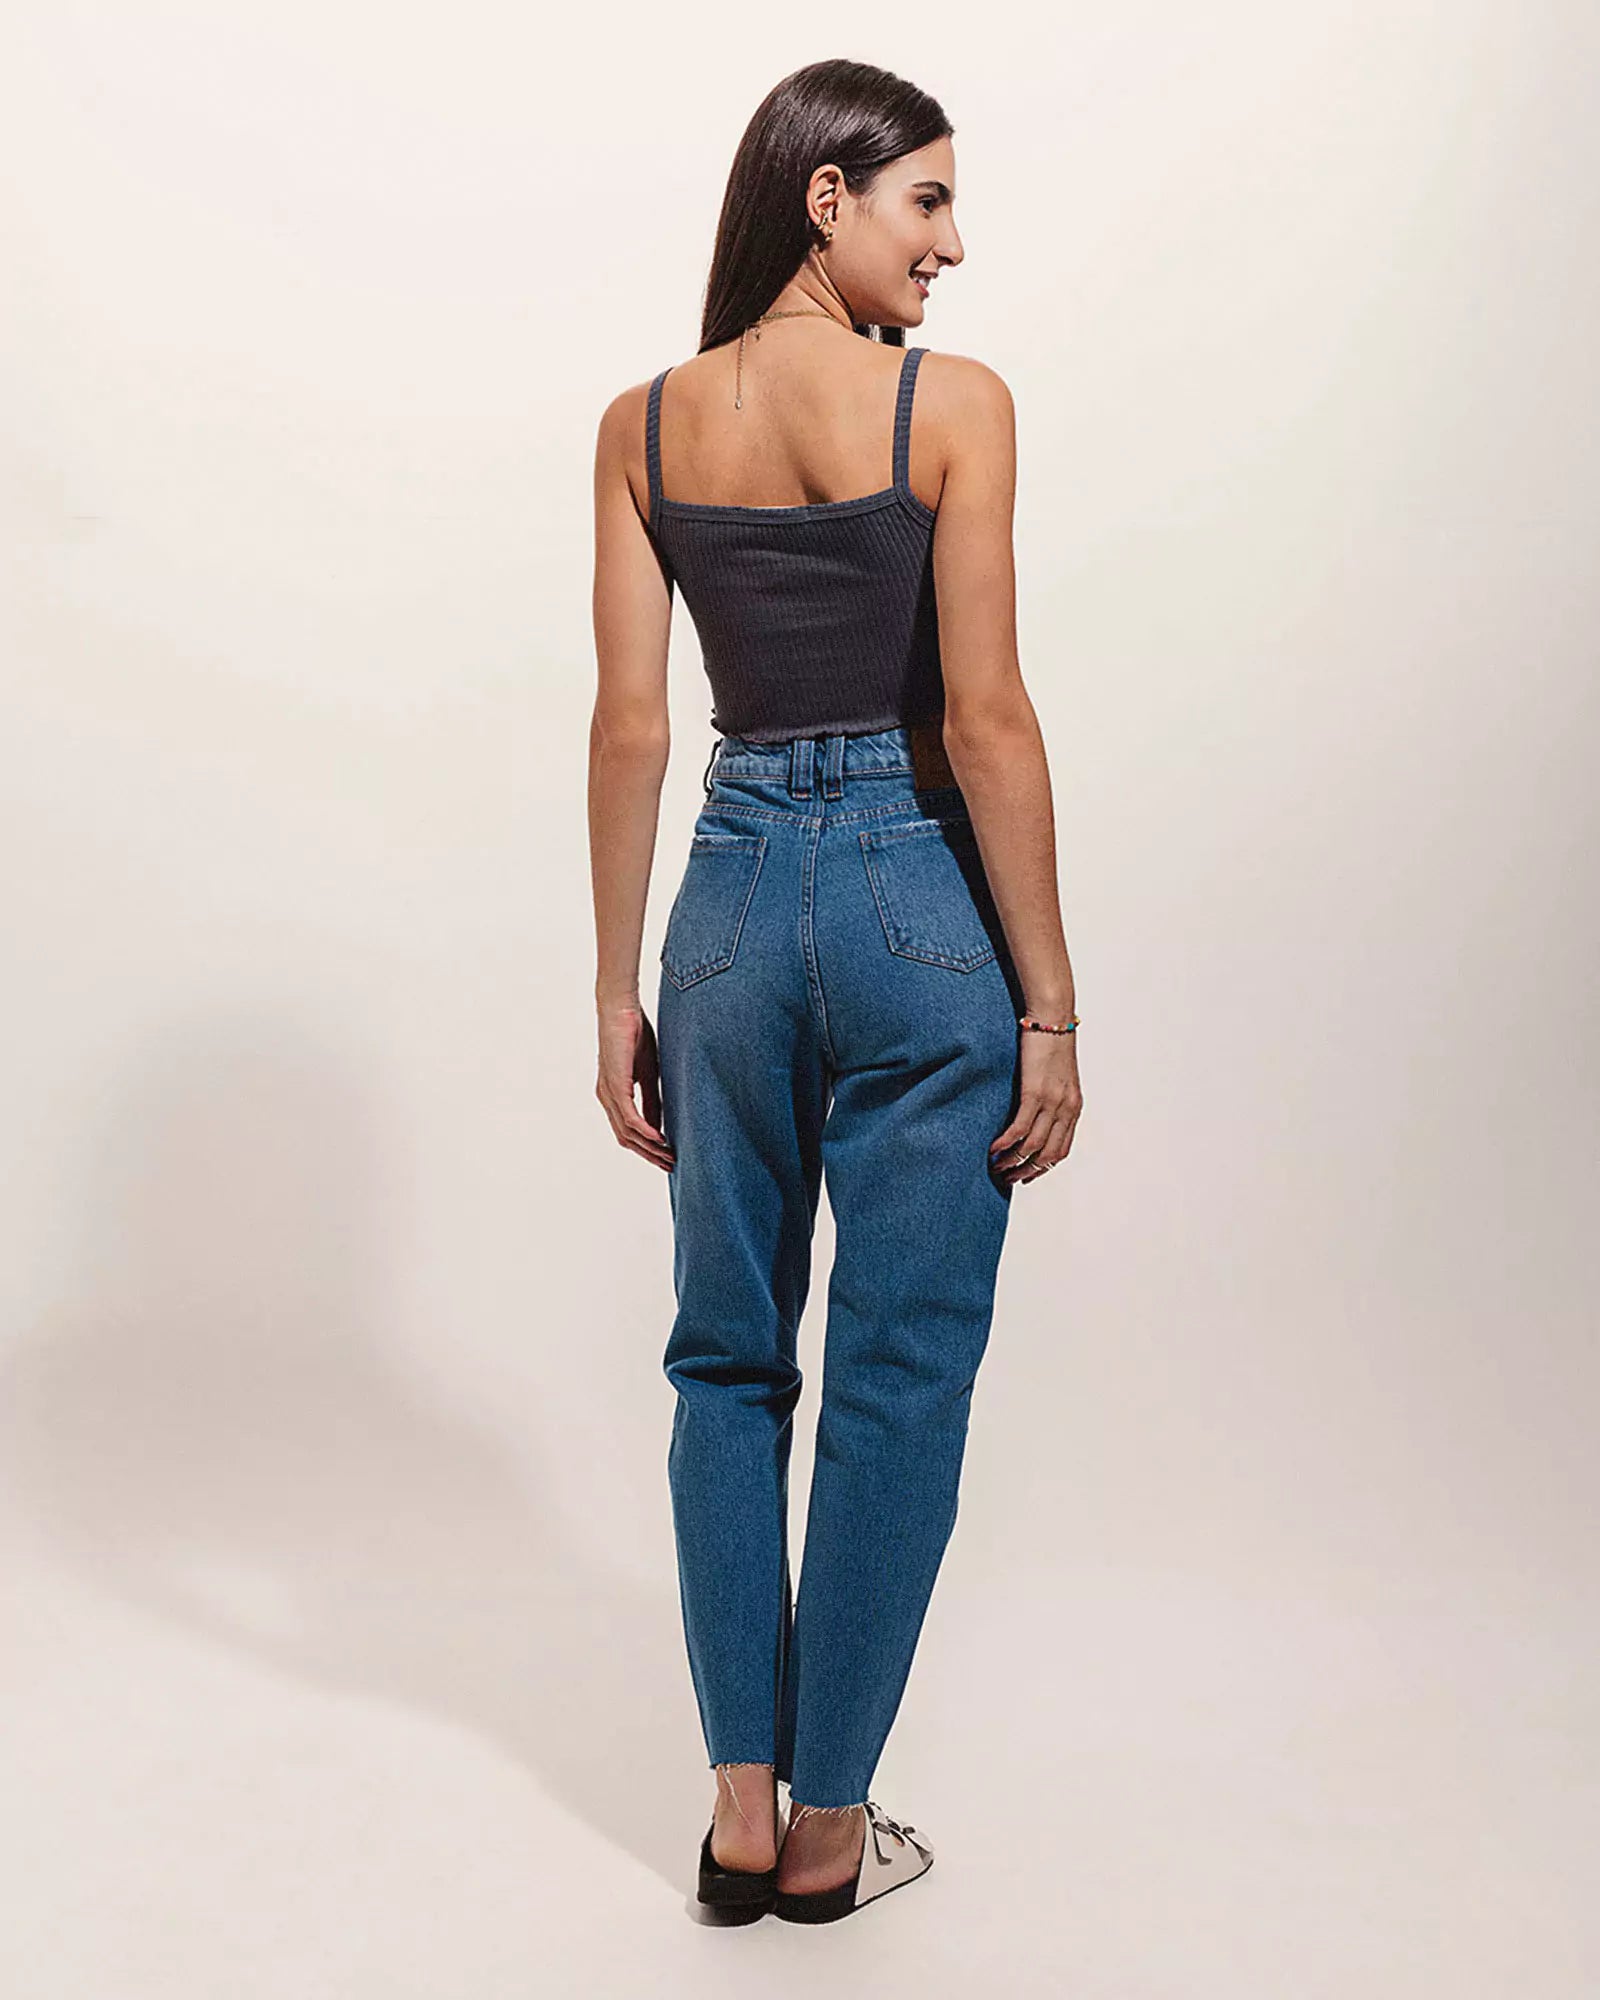 Calça Mom Jeans Barra Fio Azul Médio Eco Denim™. Compre online moda sustentável e atemporal na Minimadeia. Roupas femininas estilosas, básicas e sustentáveis. Foto produto 04